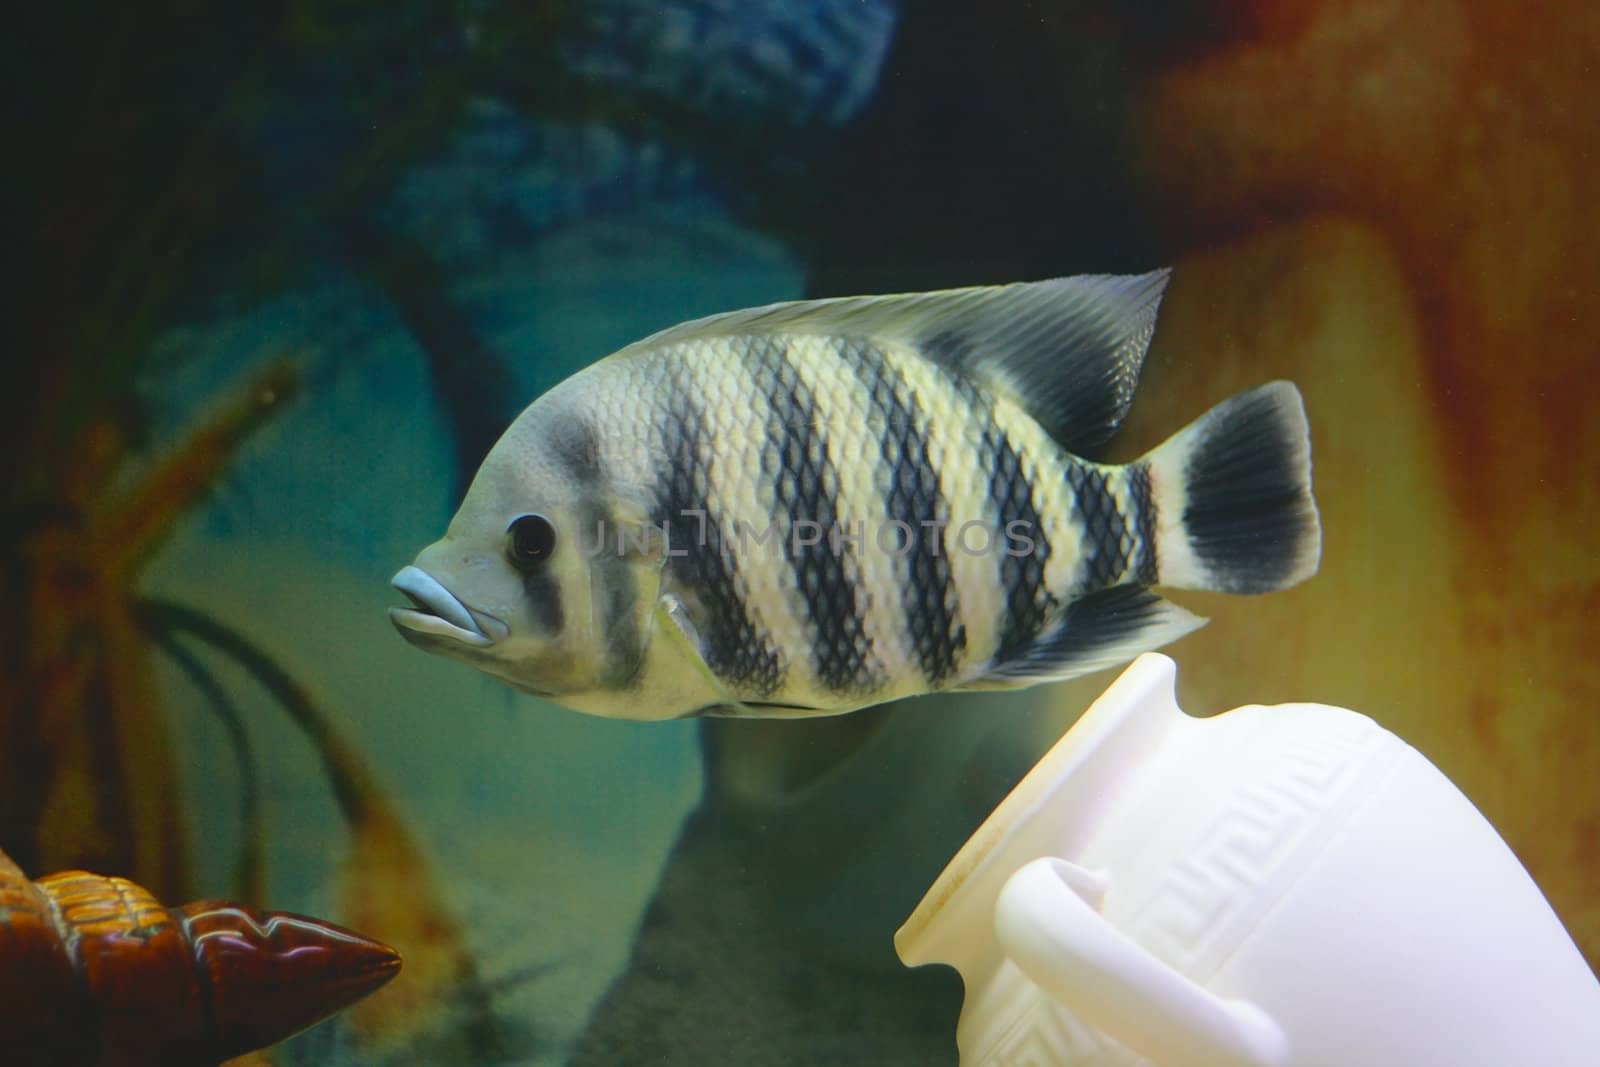 Big tropical fish in aquarium (close-up photo)